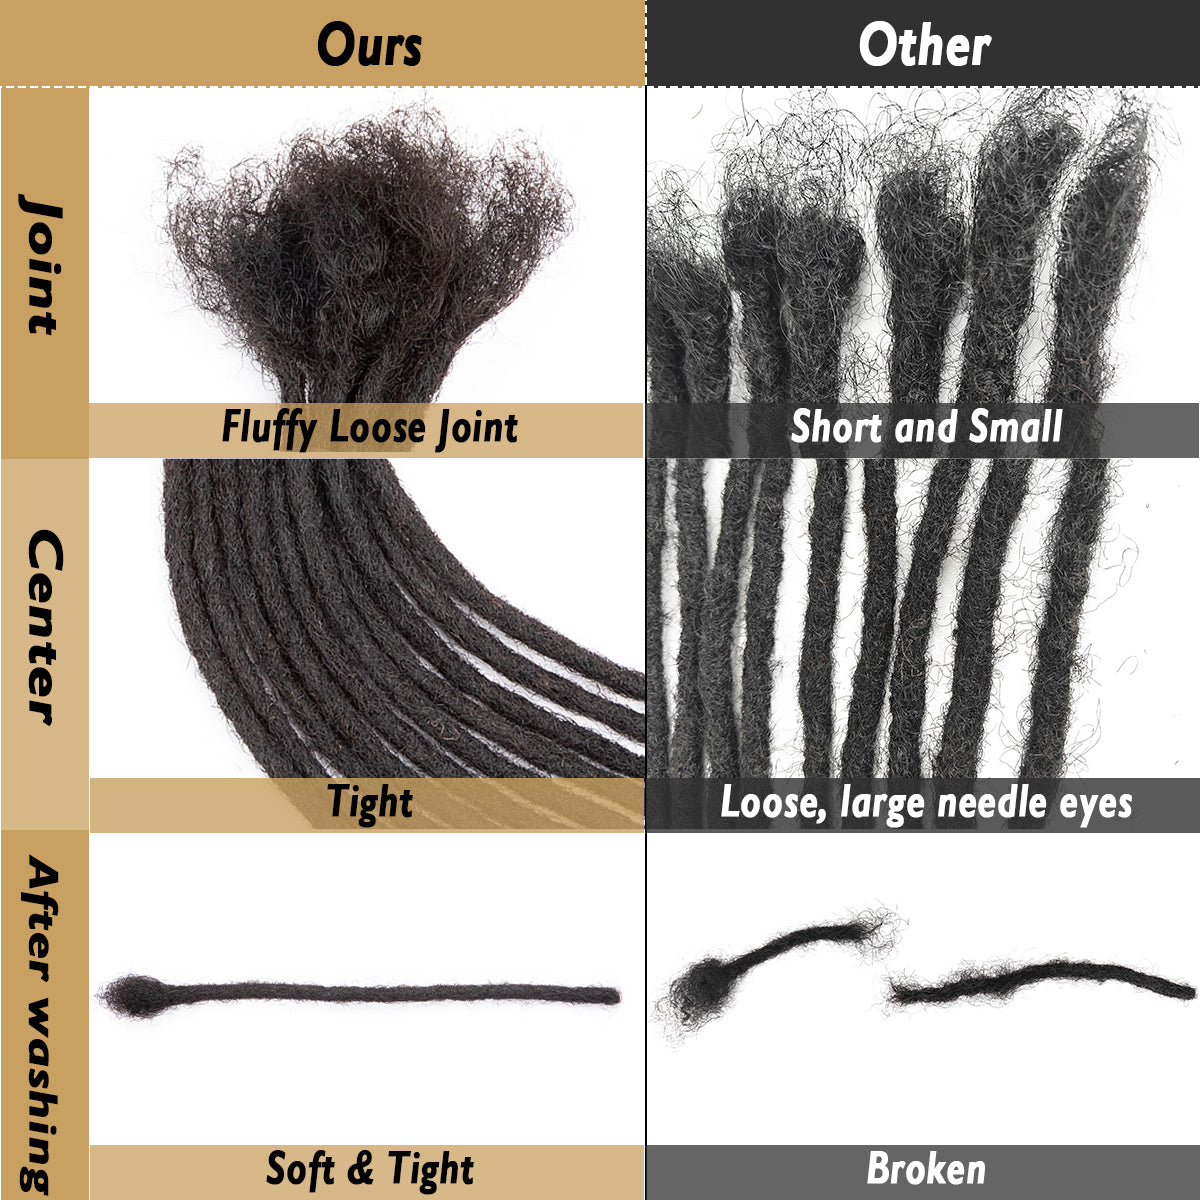 Extensions de cheveux humains permanentes, 4 à 18 pouces, épaisseur de 0.4cm, Dreadlocks, Locs